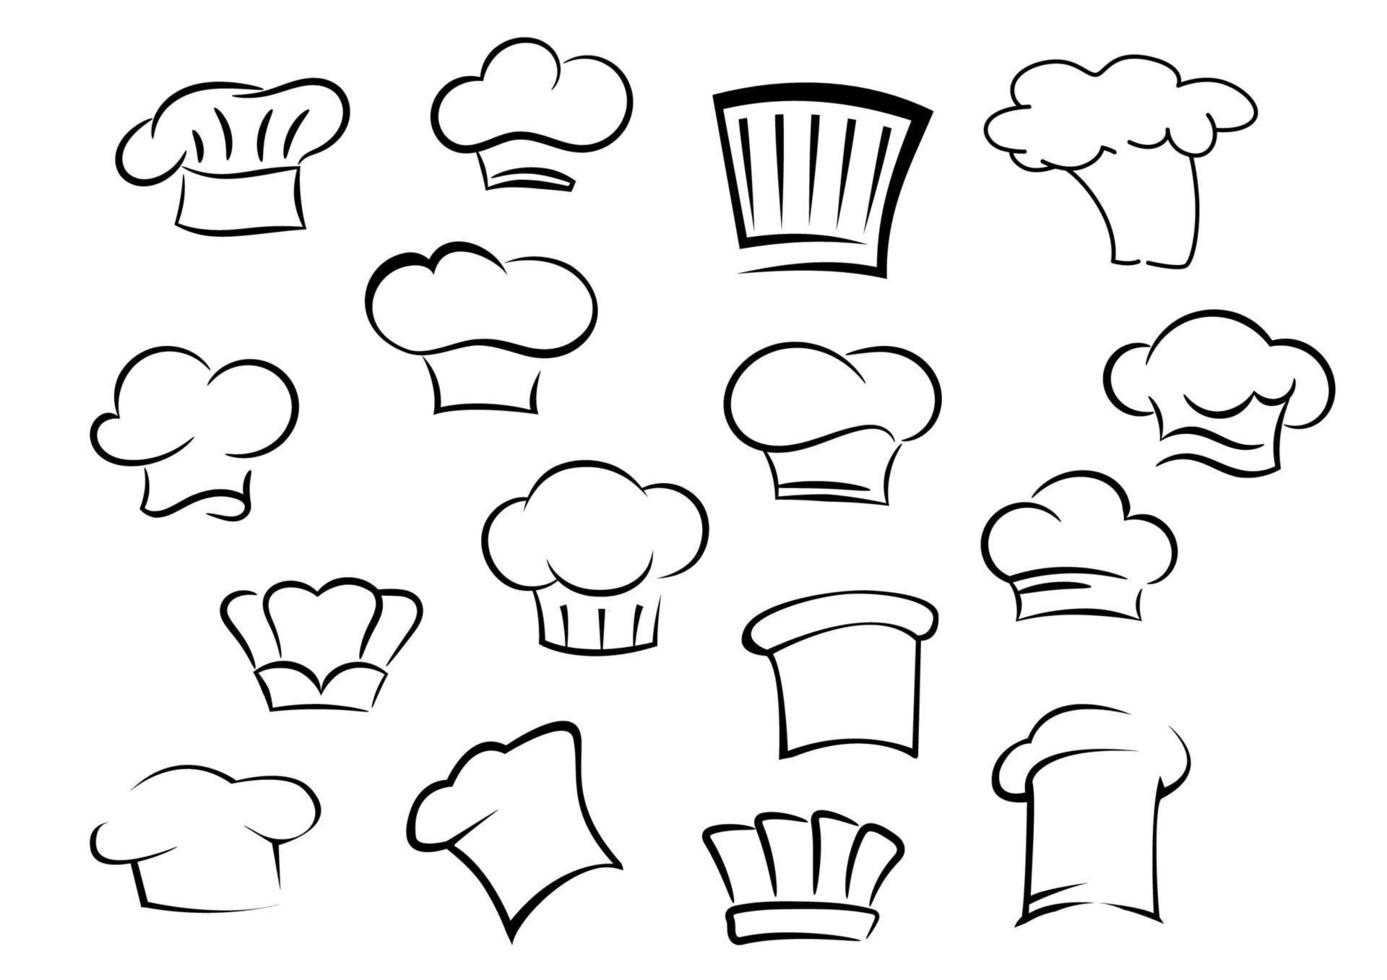 Kochmützen oder Mützen für Küchenpersonal vektor